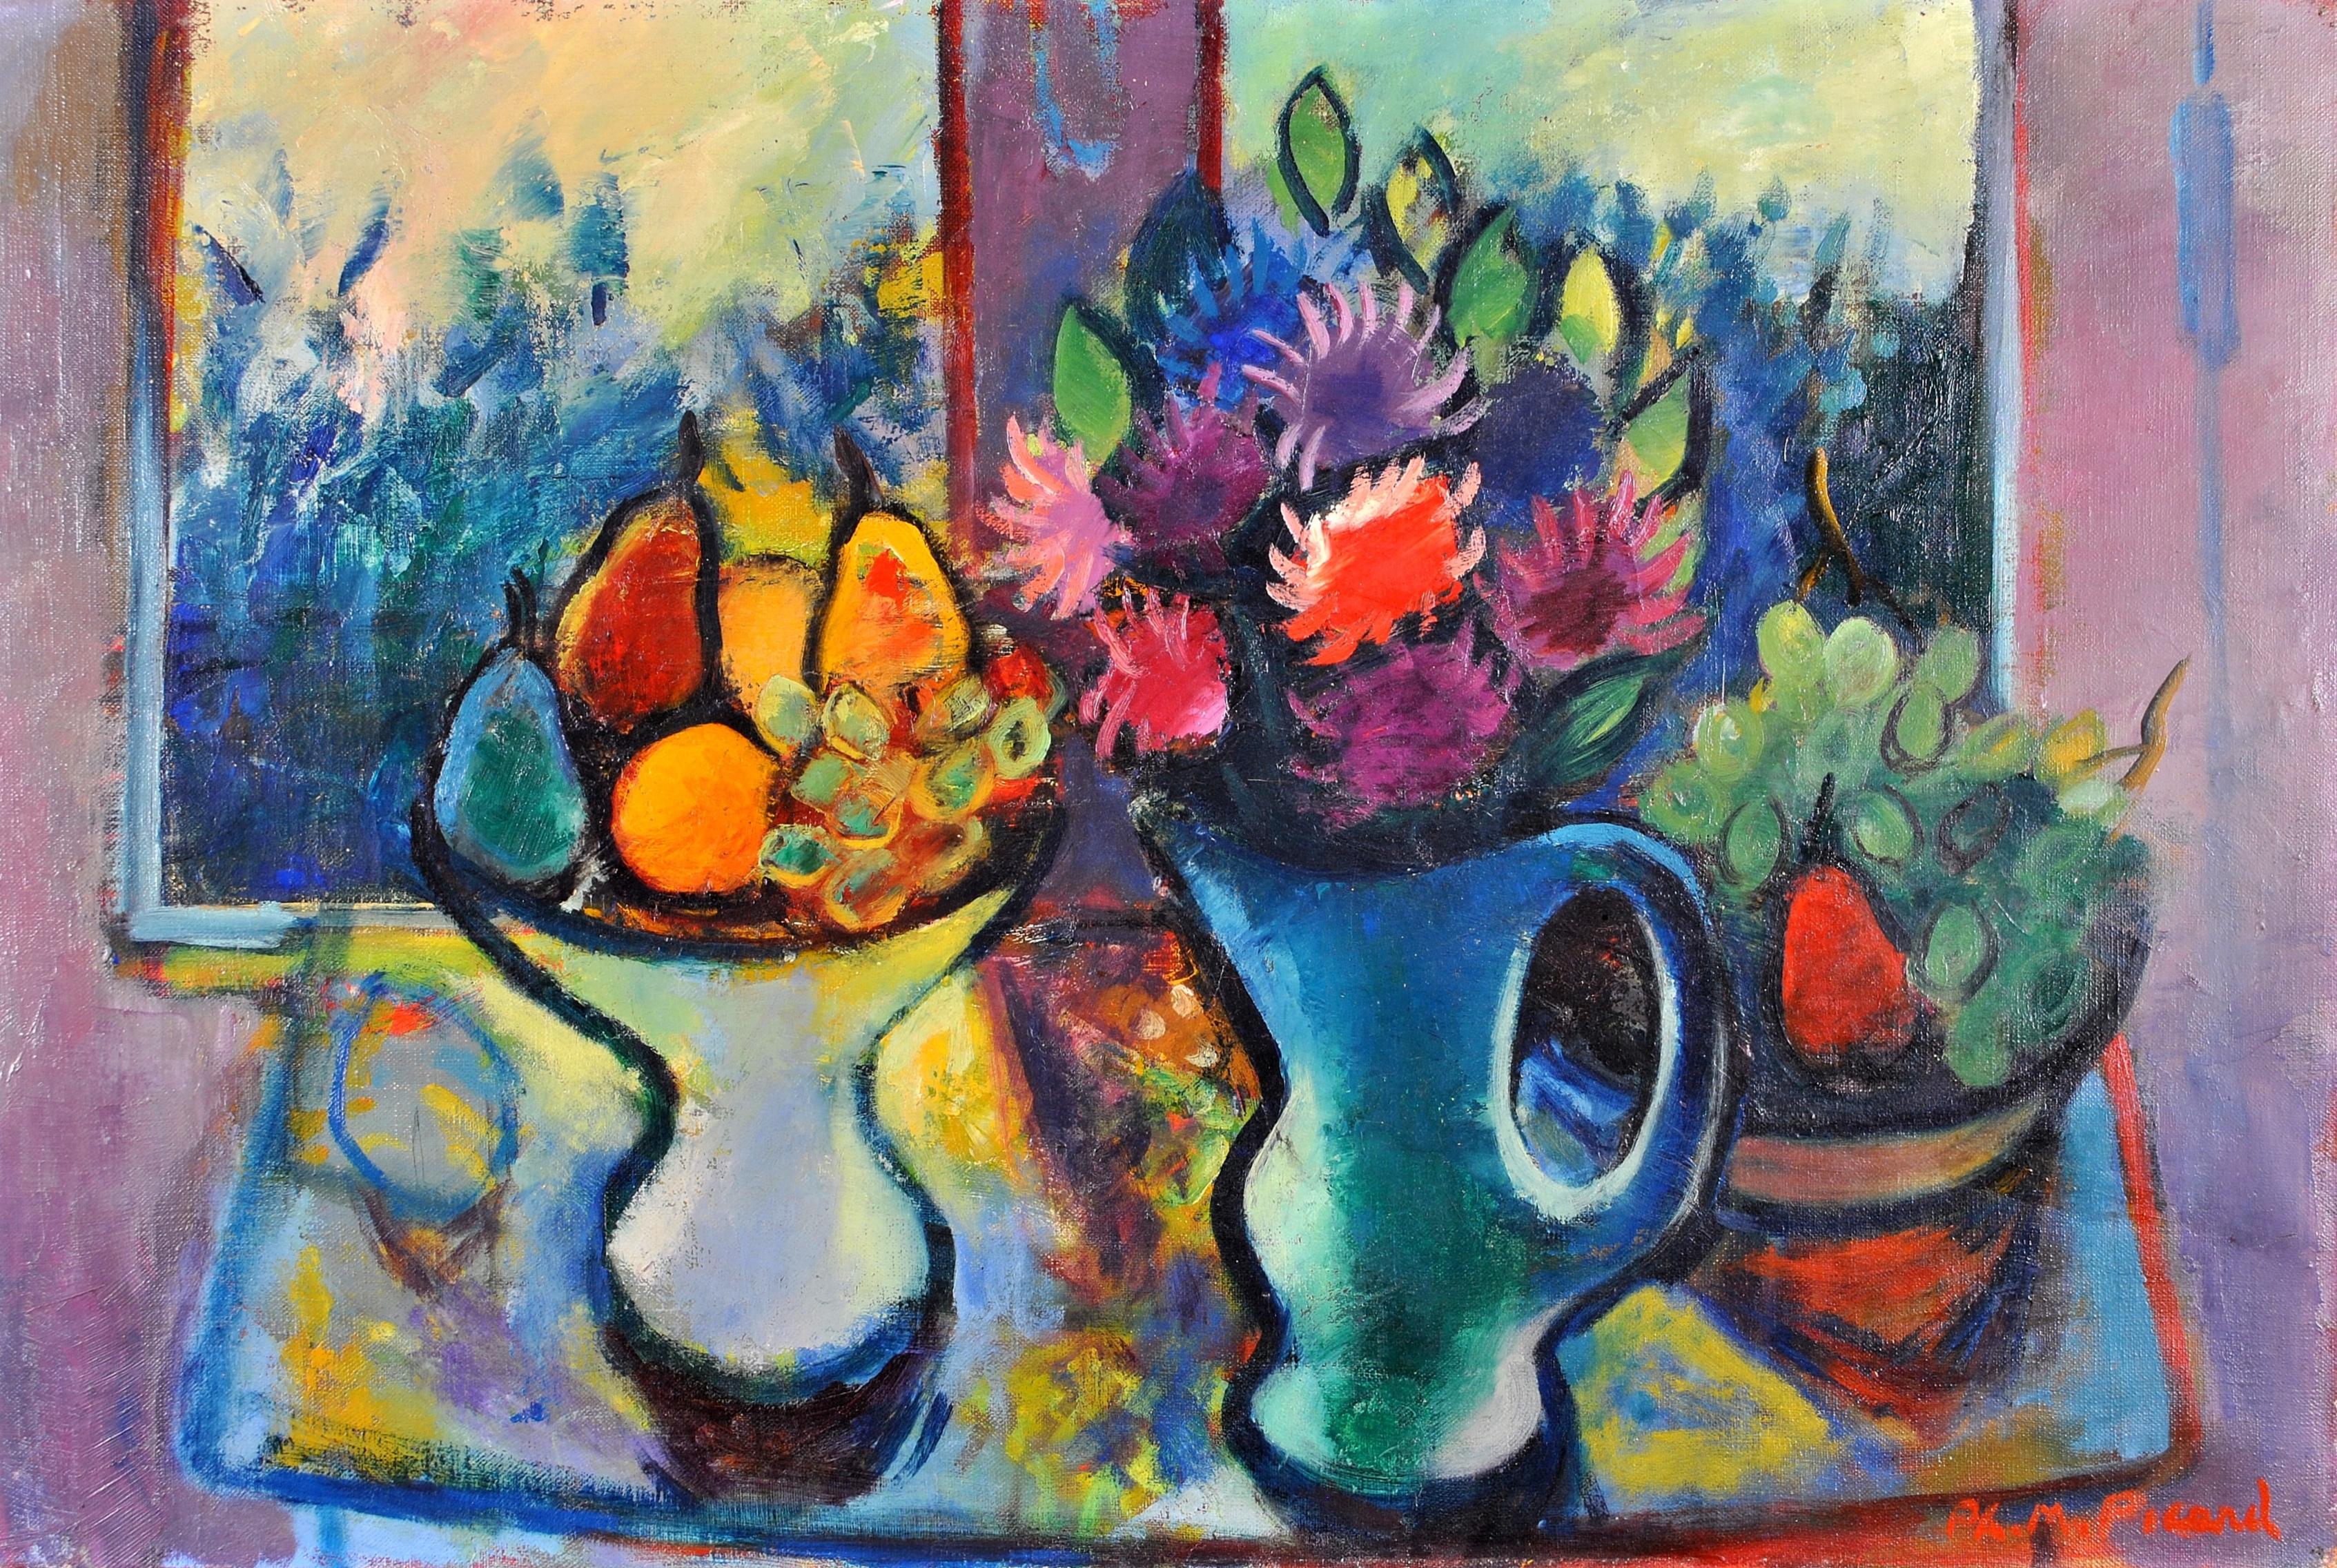 Fleurs et fruits dans une fenêtre - Grande nature morte expressionniste française - Painting de Philippe Marie René Picard 